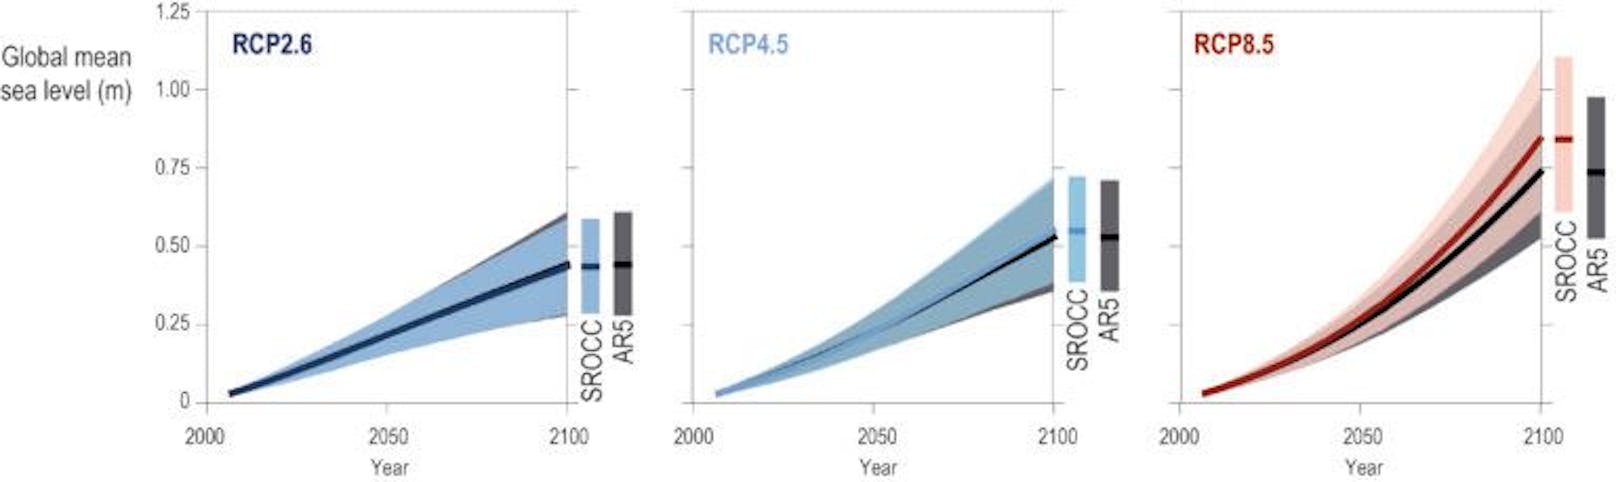 Möglicher Anstieg des Meeresspiegel bis zum Jahr 2100 in verschiedenen Klimaszenarien nach dem 6. IPCC-Report.